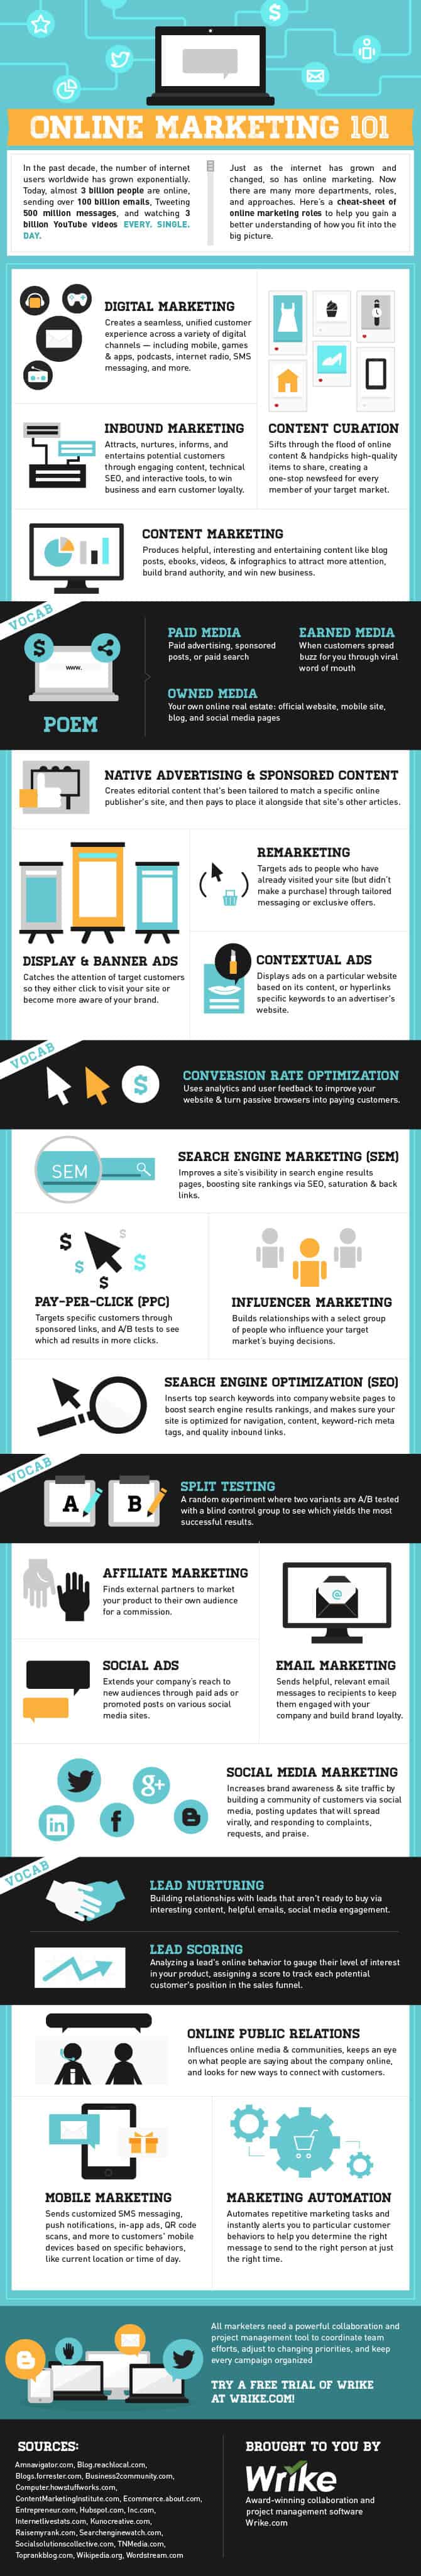 infographic_online_marketing_101_full